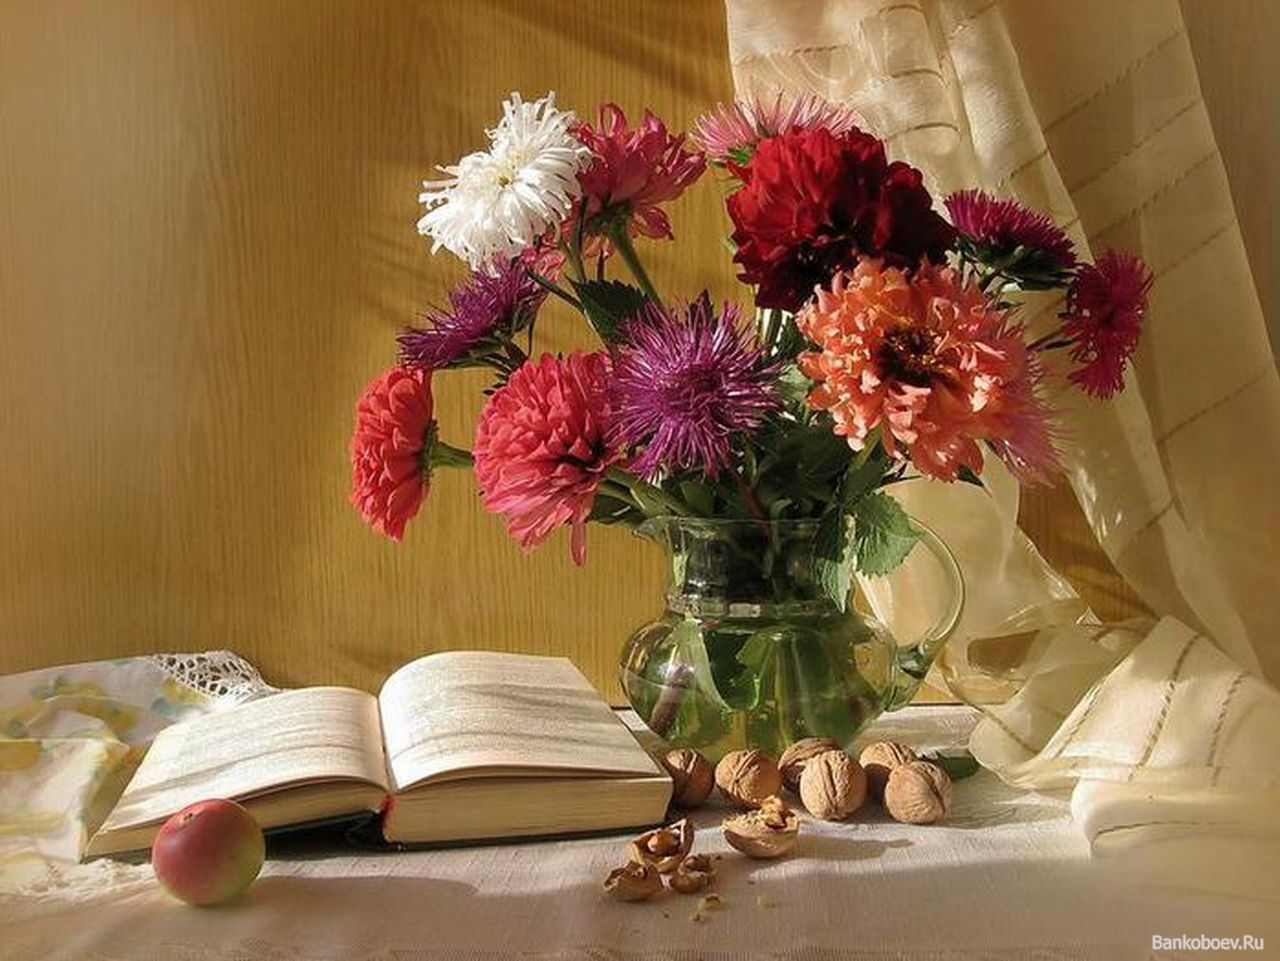 Фотонатюрморты с цветами и книгами